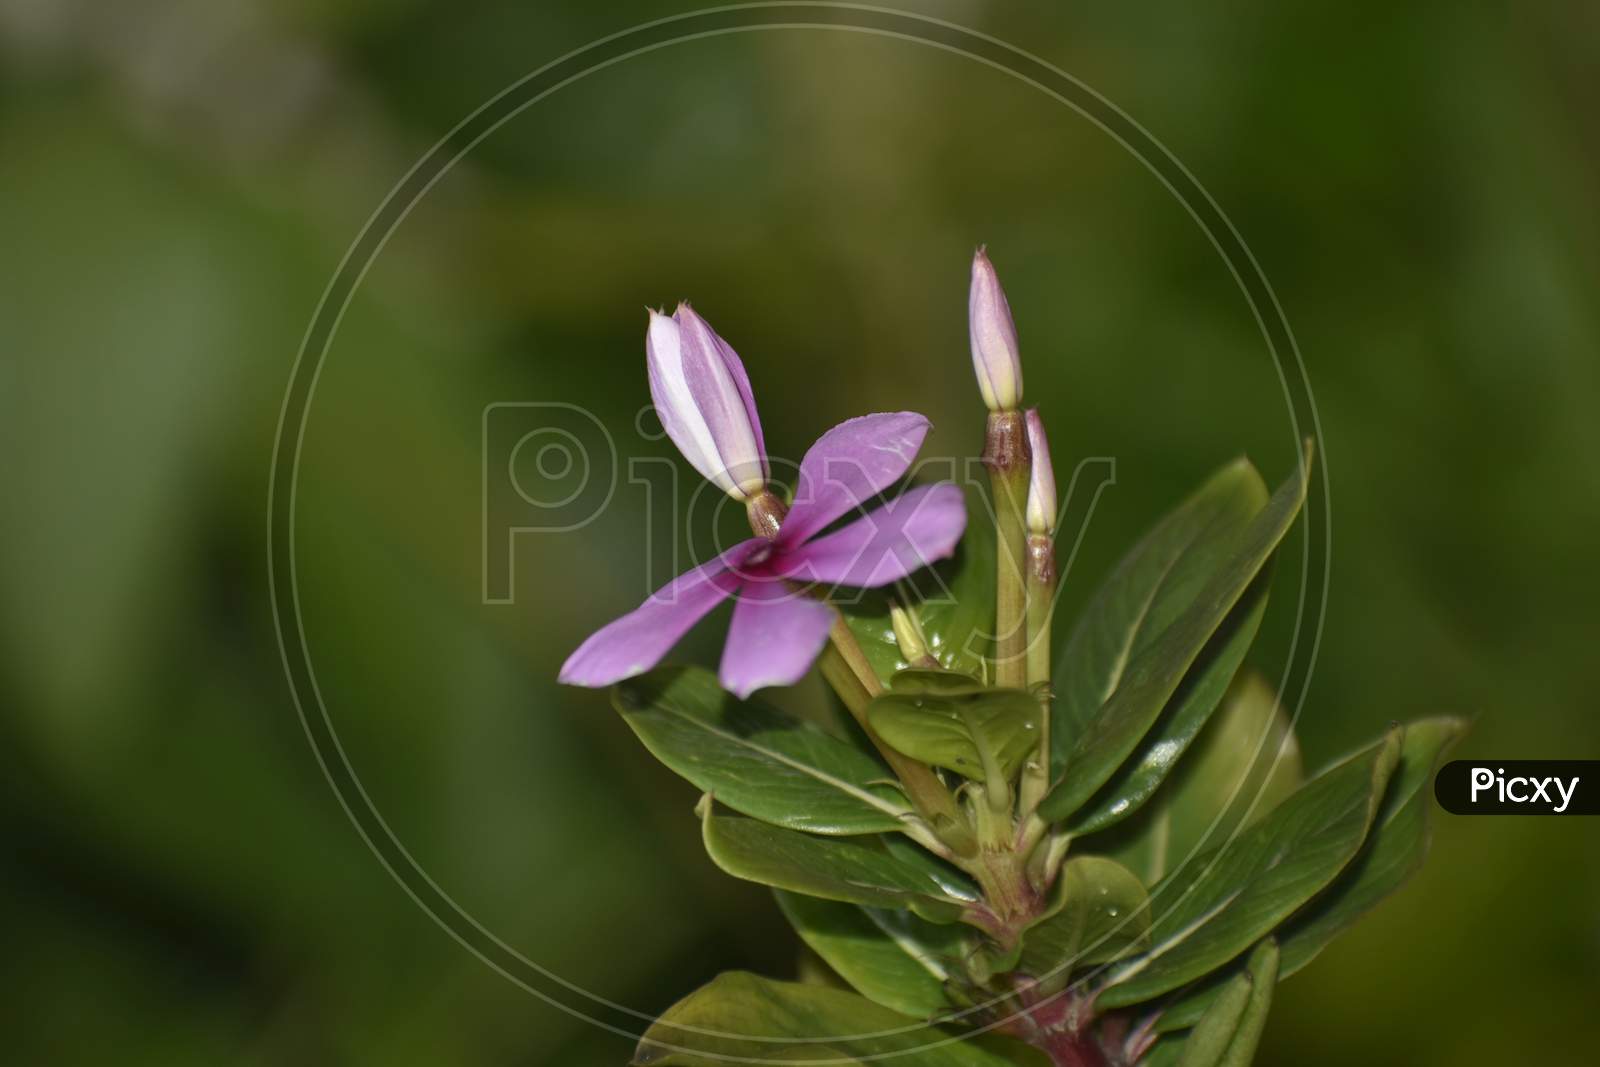 A Closeup Photograph Of Pink Flower.